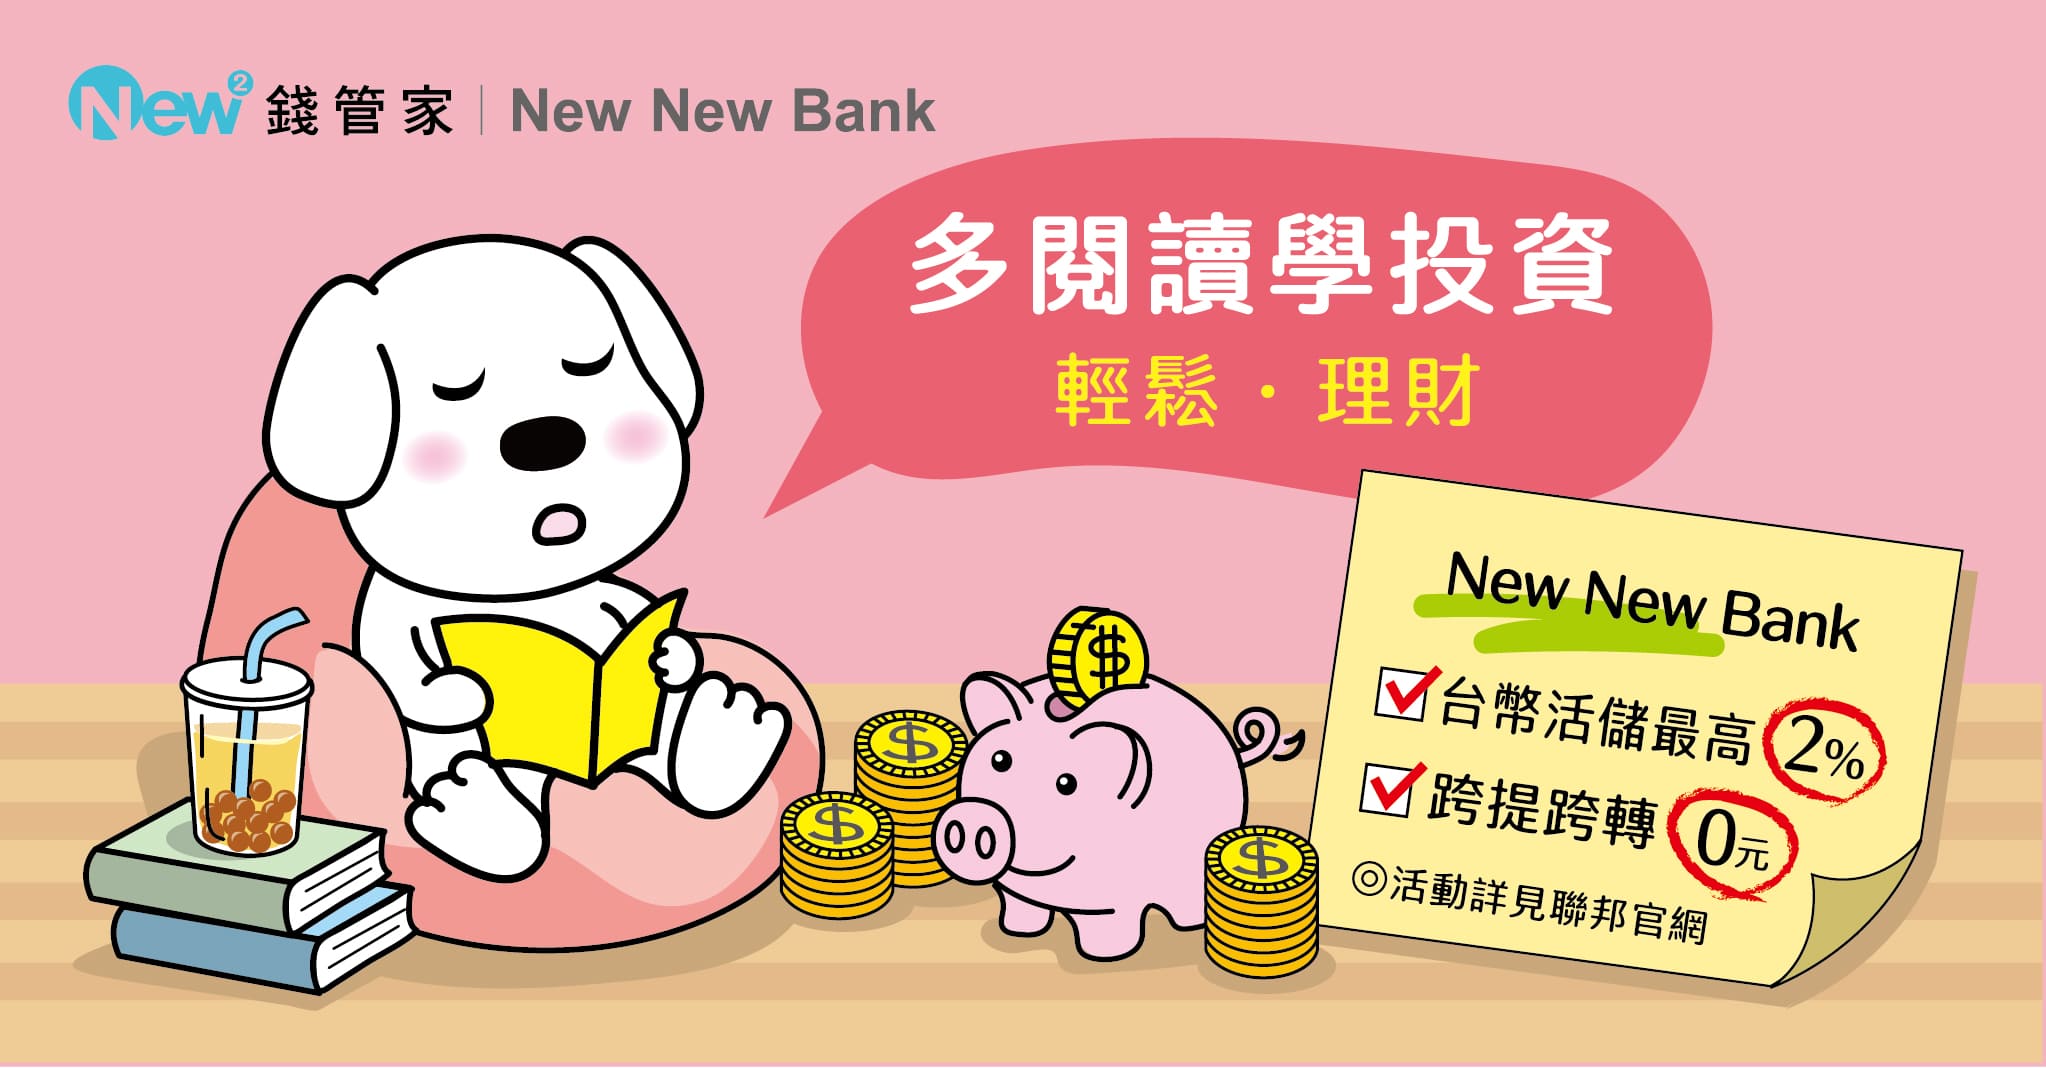 聯邦銀行NewNewBank 